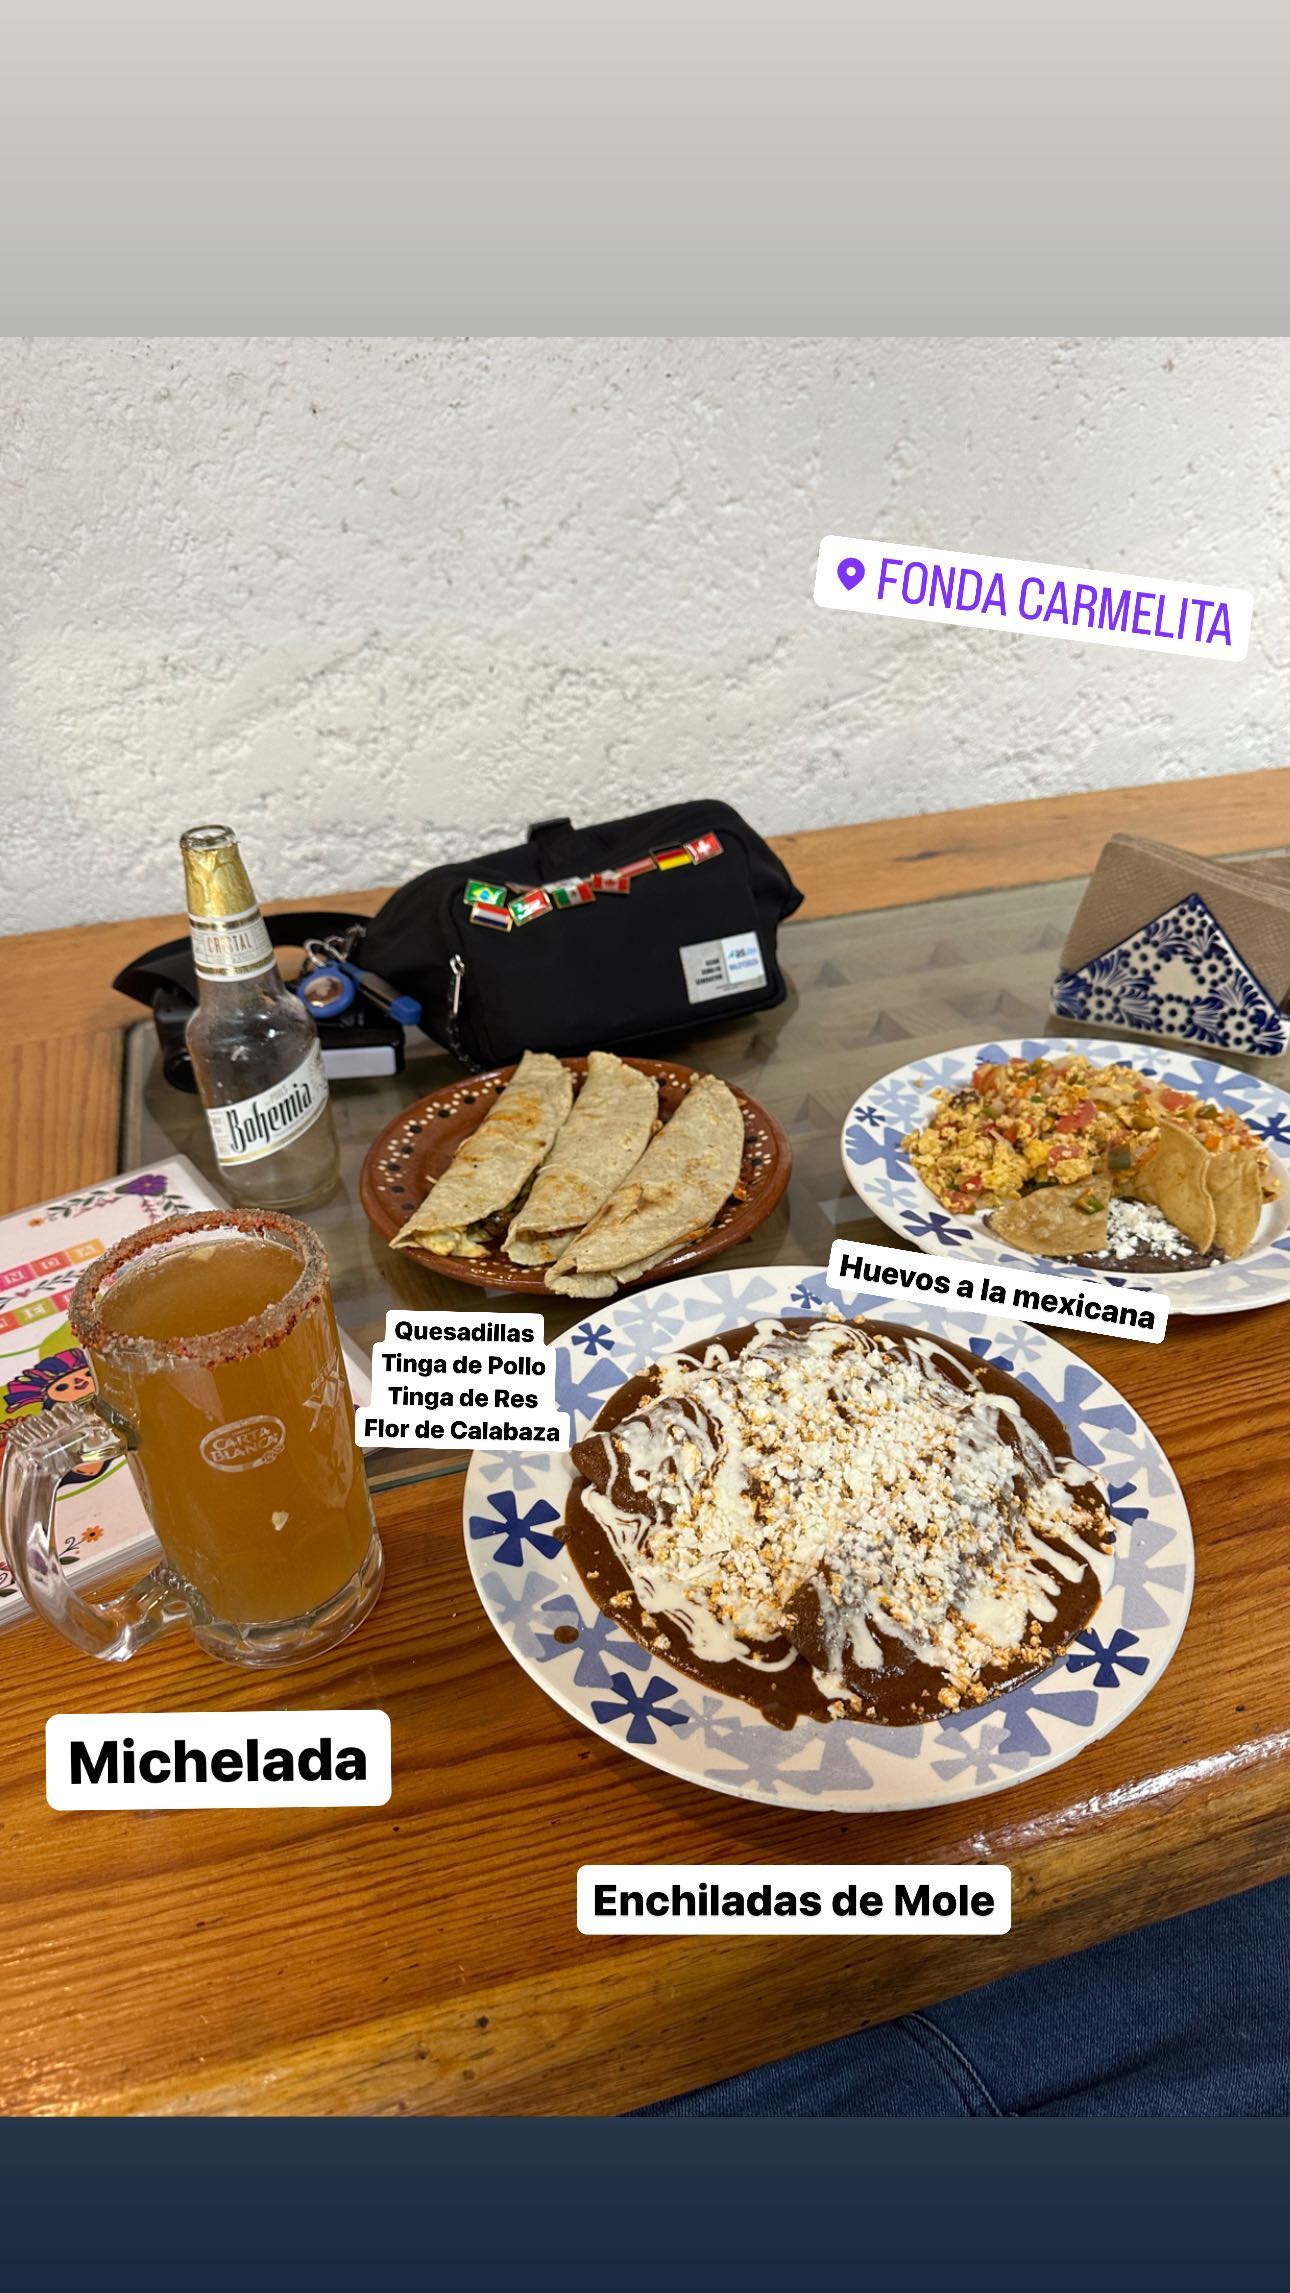 Michelada - Enchiladas de Mole - Huevos a la mexicana - Quesallas: Tinga de Pollom Tinga de Res, Pepperoni Flower